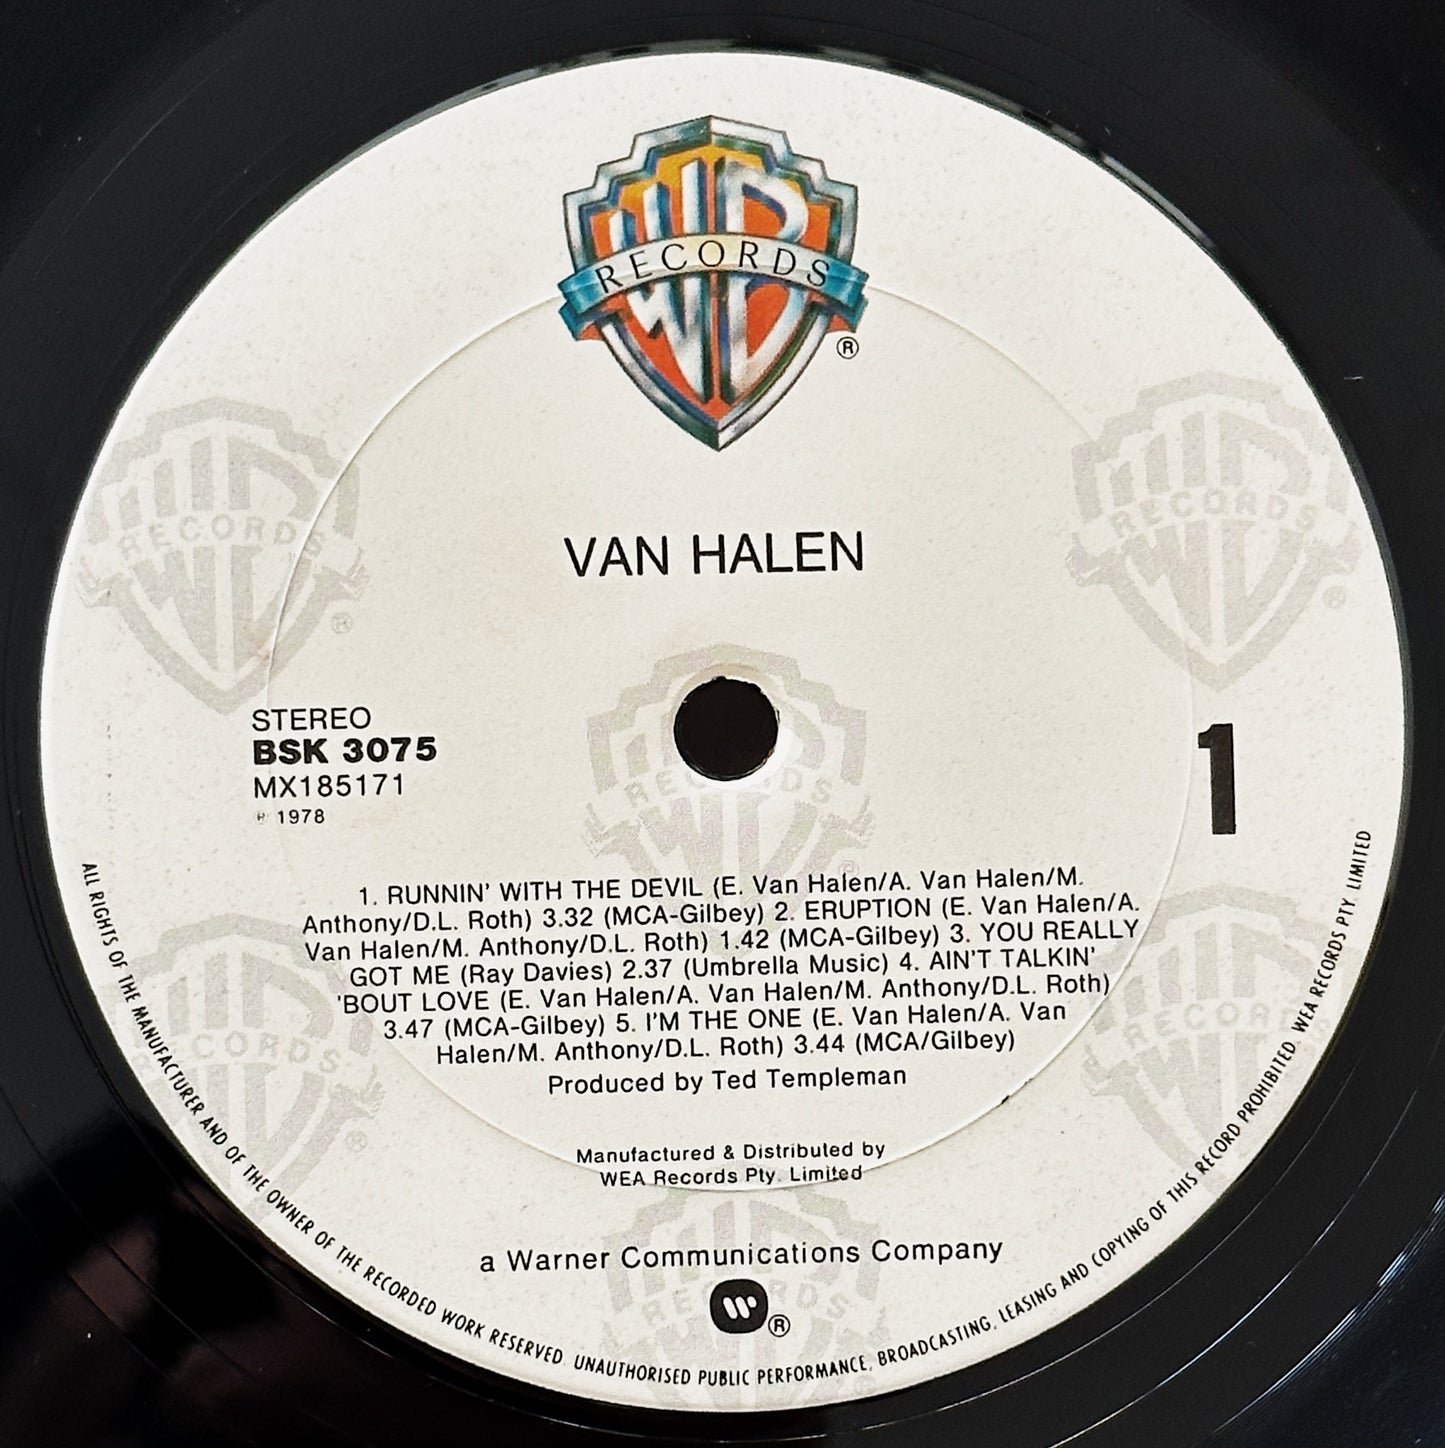 Van Halen / Van Halen LP